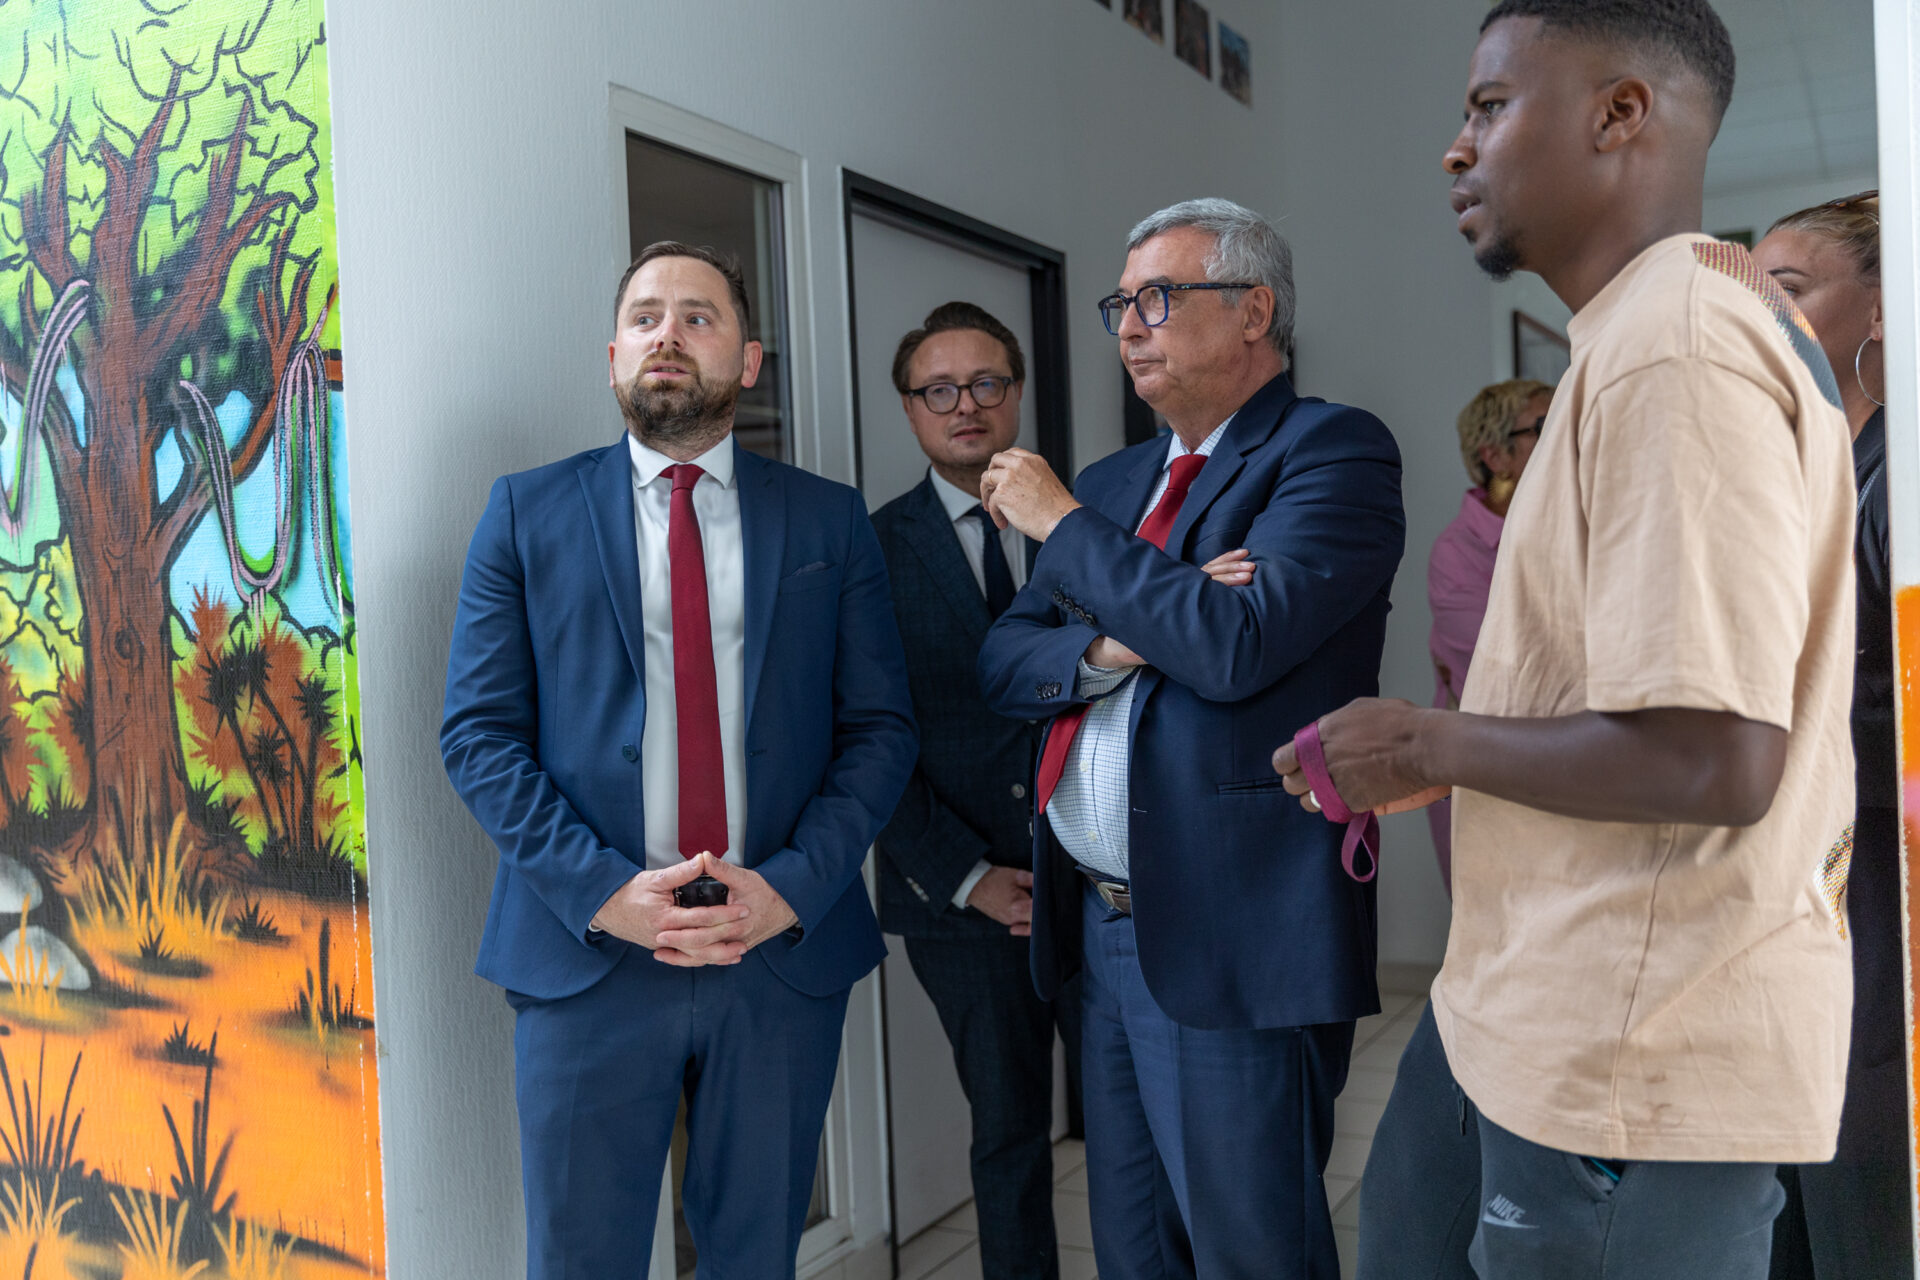 Le 18 juin dernier, nous avons eu l'honneur d'accueillir Jean-François Parigi, Président du Département de Seine-et-Marne, pour une visite de notre centre d’accueil pour les mineurs non accompagnés (MNA) de Roissy-en-Brie.